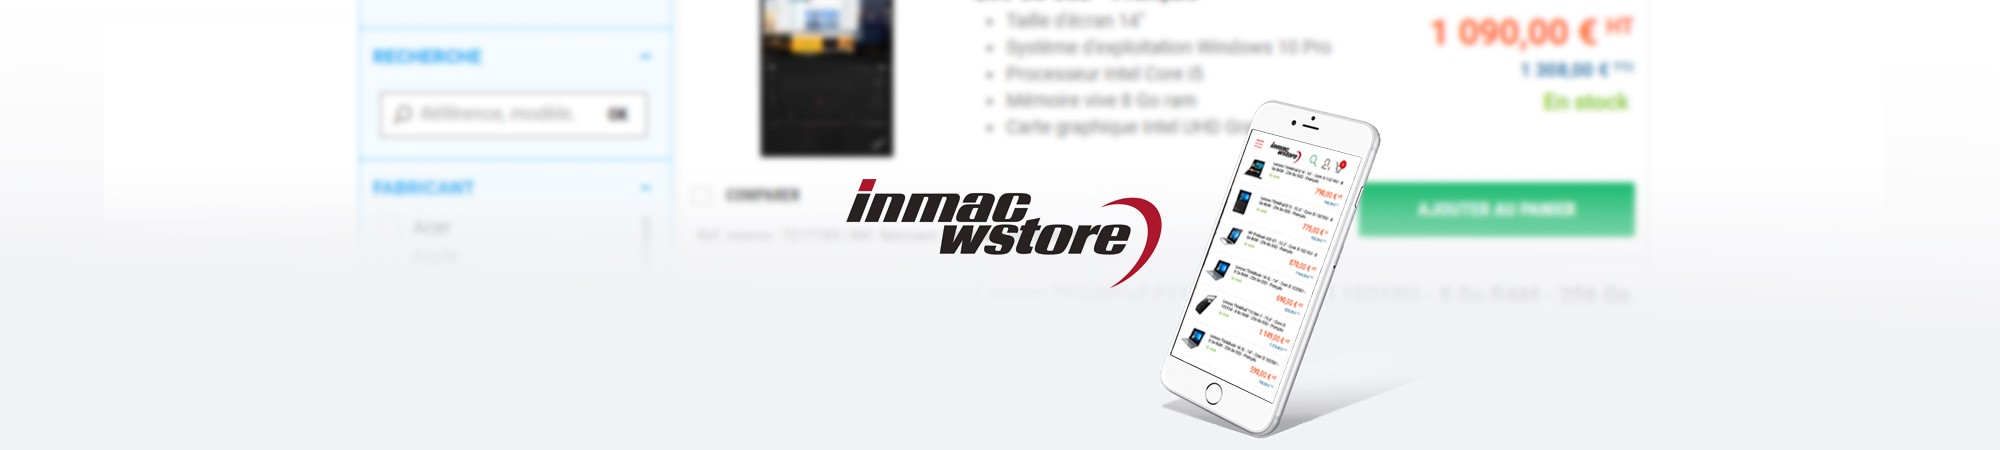  Refonte responsive de la liste produits du site Inmac Wstore